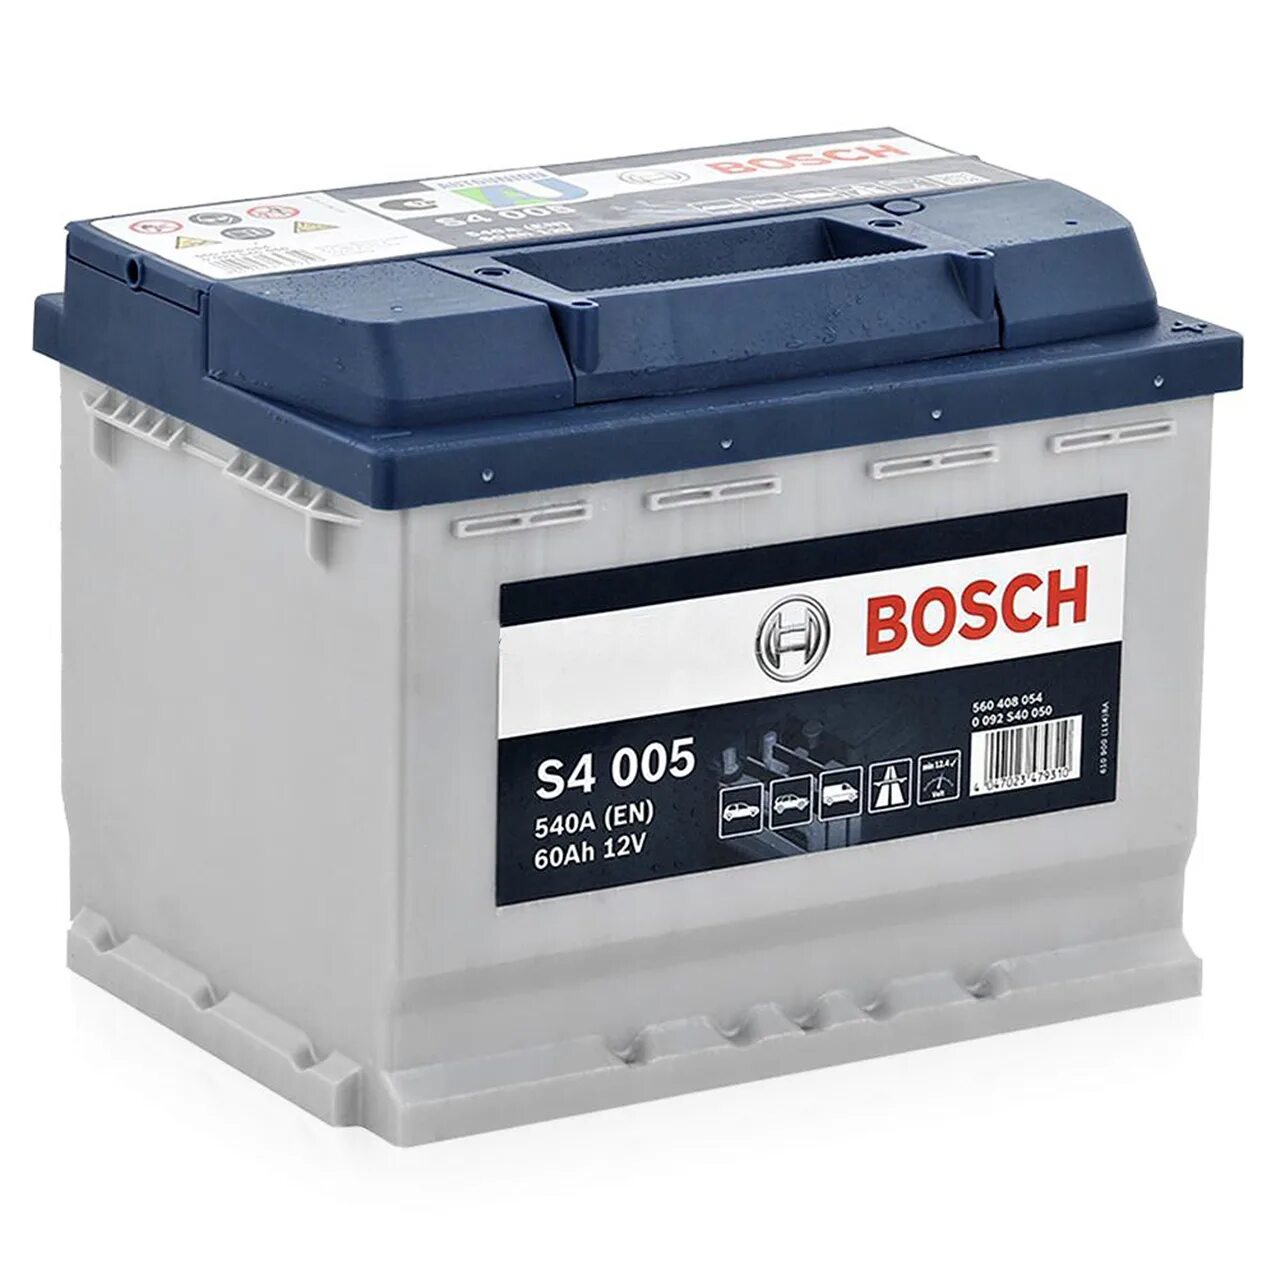 Аккумулятор автомобильный 60ah. Аккумулятор Bosch 60ah. Аккумулятор Bosch автомобильный 60 Ач. 0092s40060 АКБ s4 006 Силвер 12v 60ah 540a. Bosch 60 АКБ s5004.